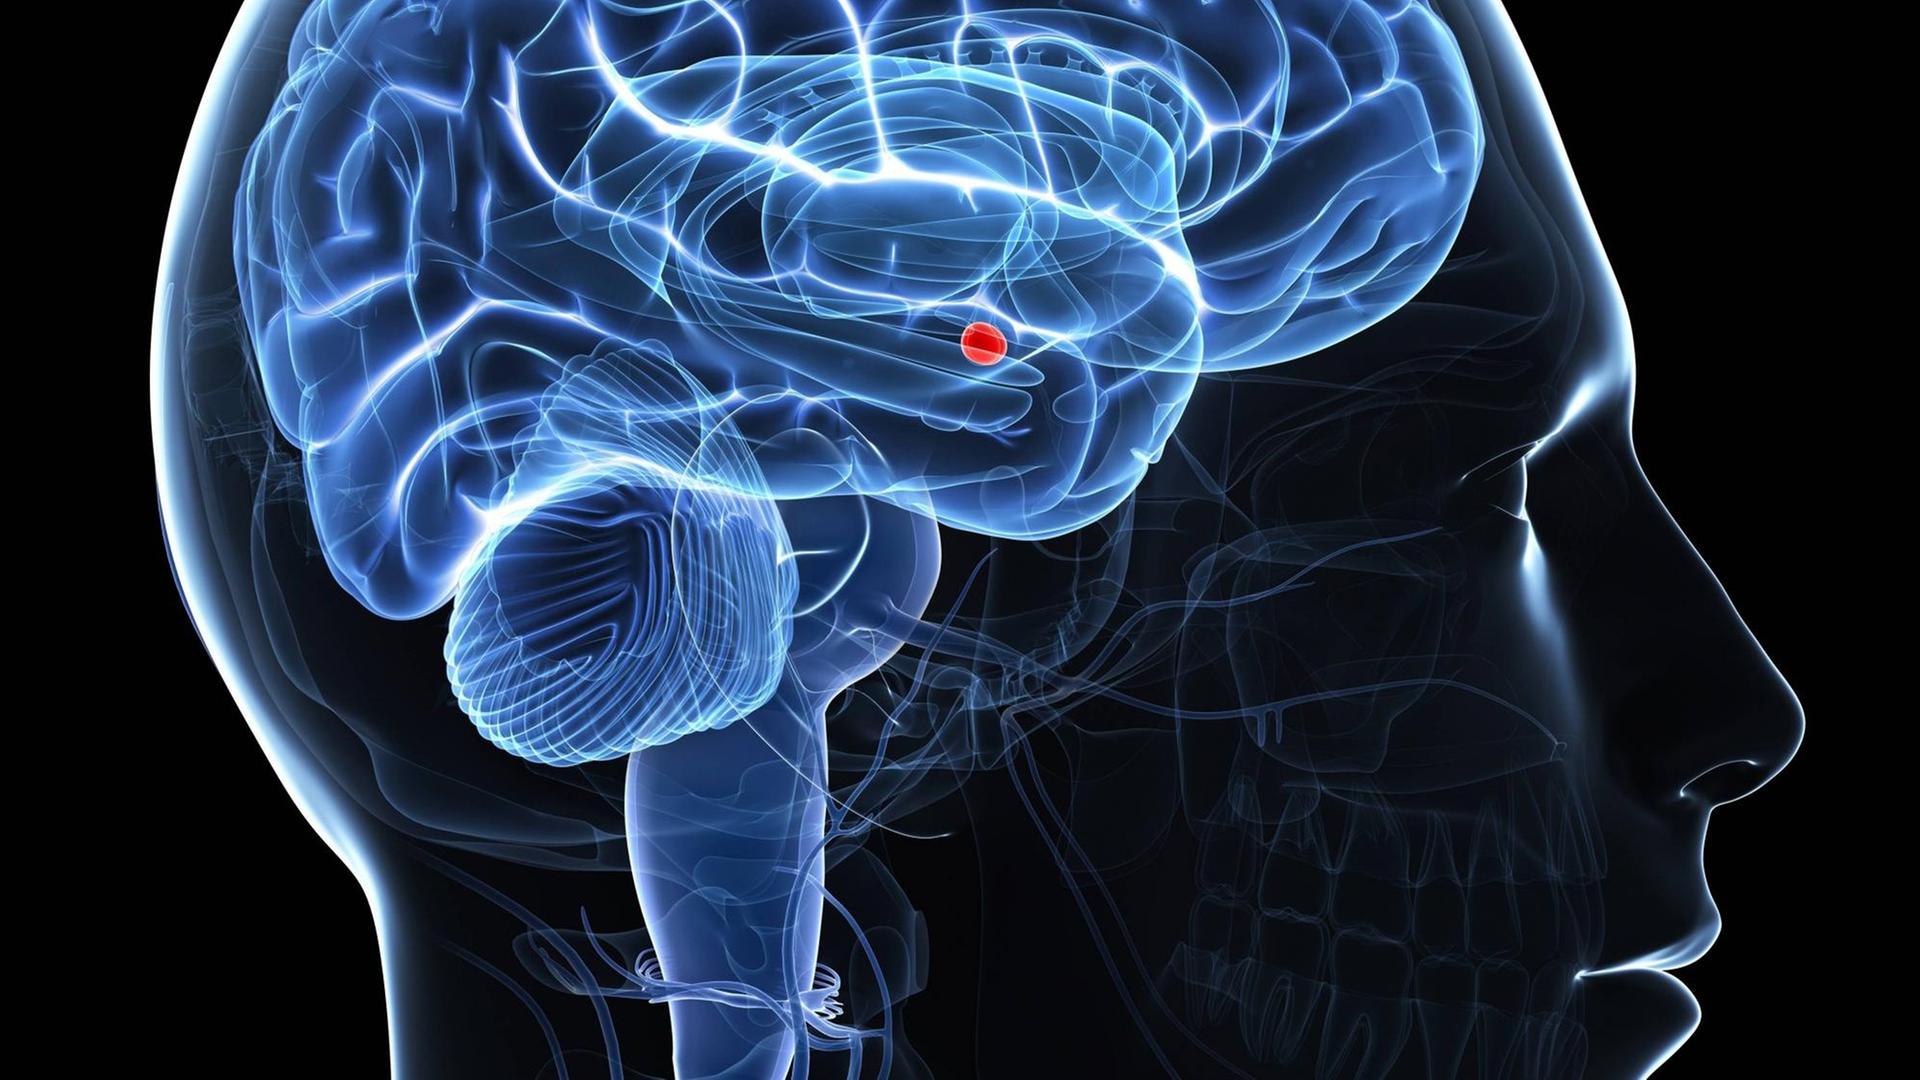 Grafik vom Gehirn; die Amygdala ist rot gekennzeichnet.